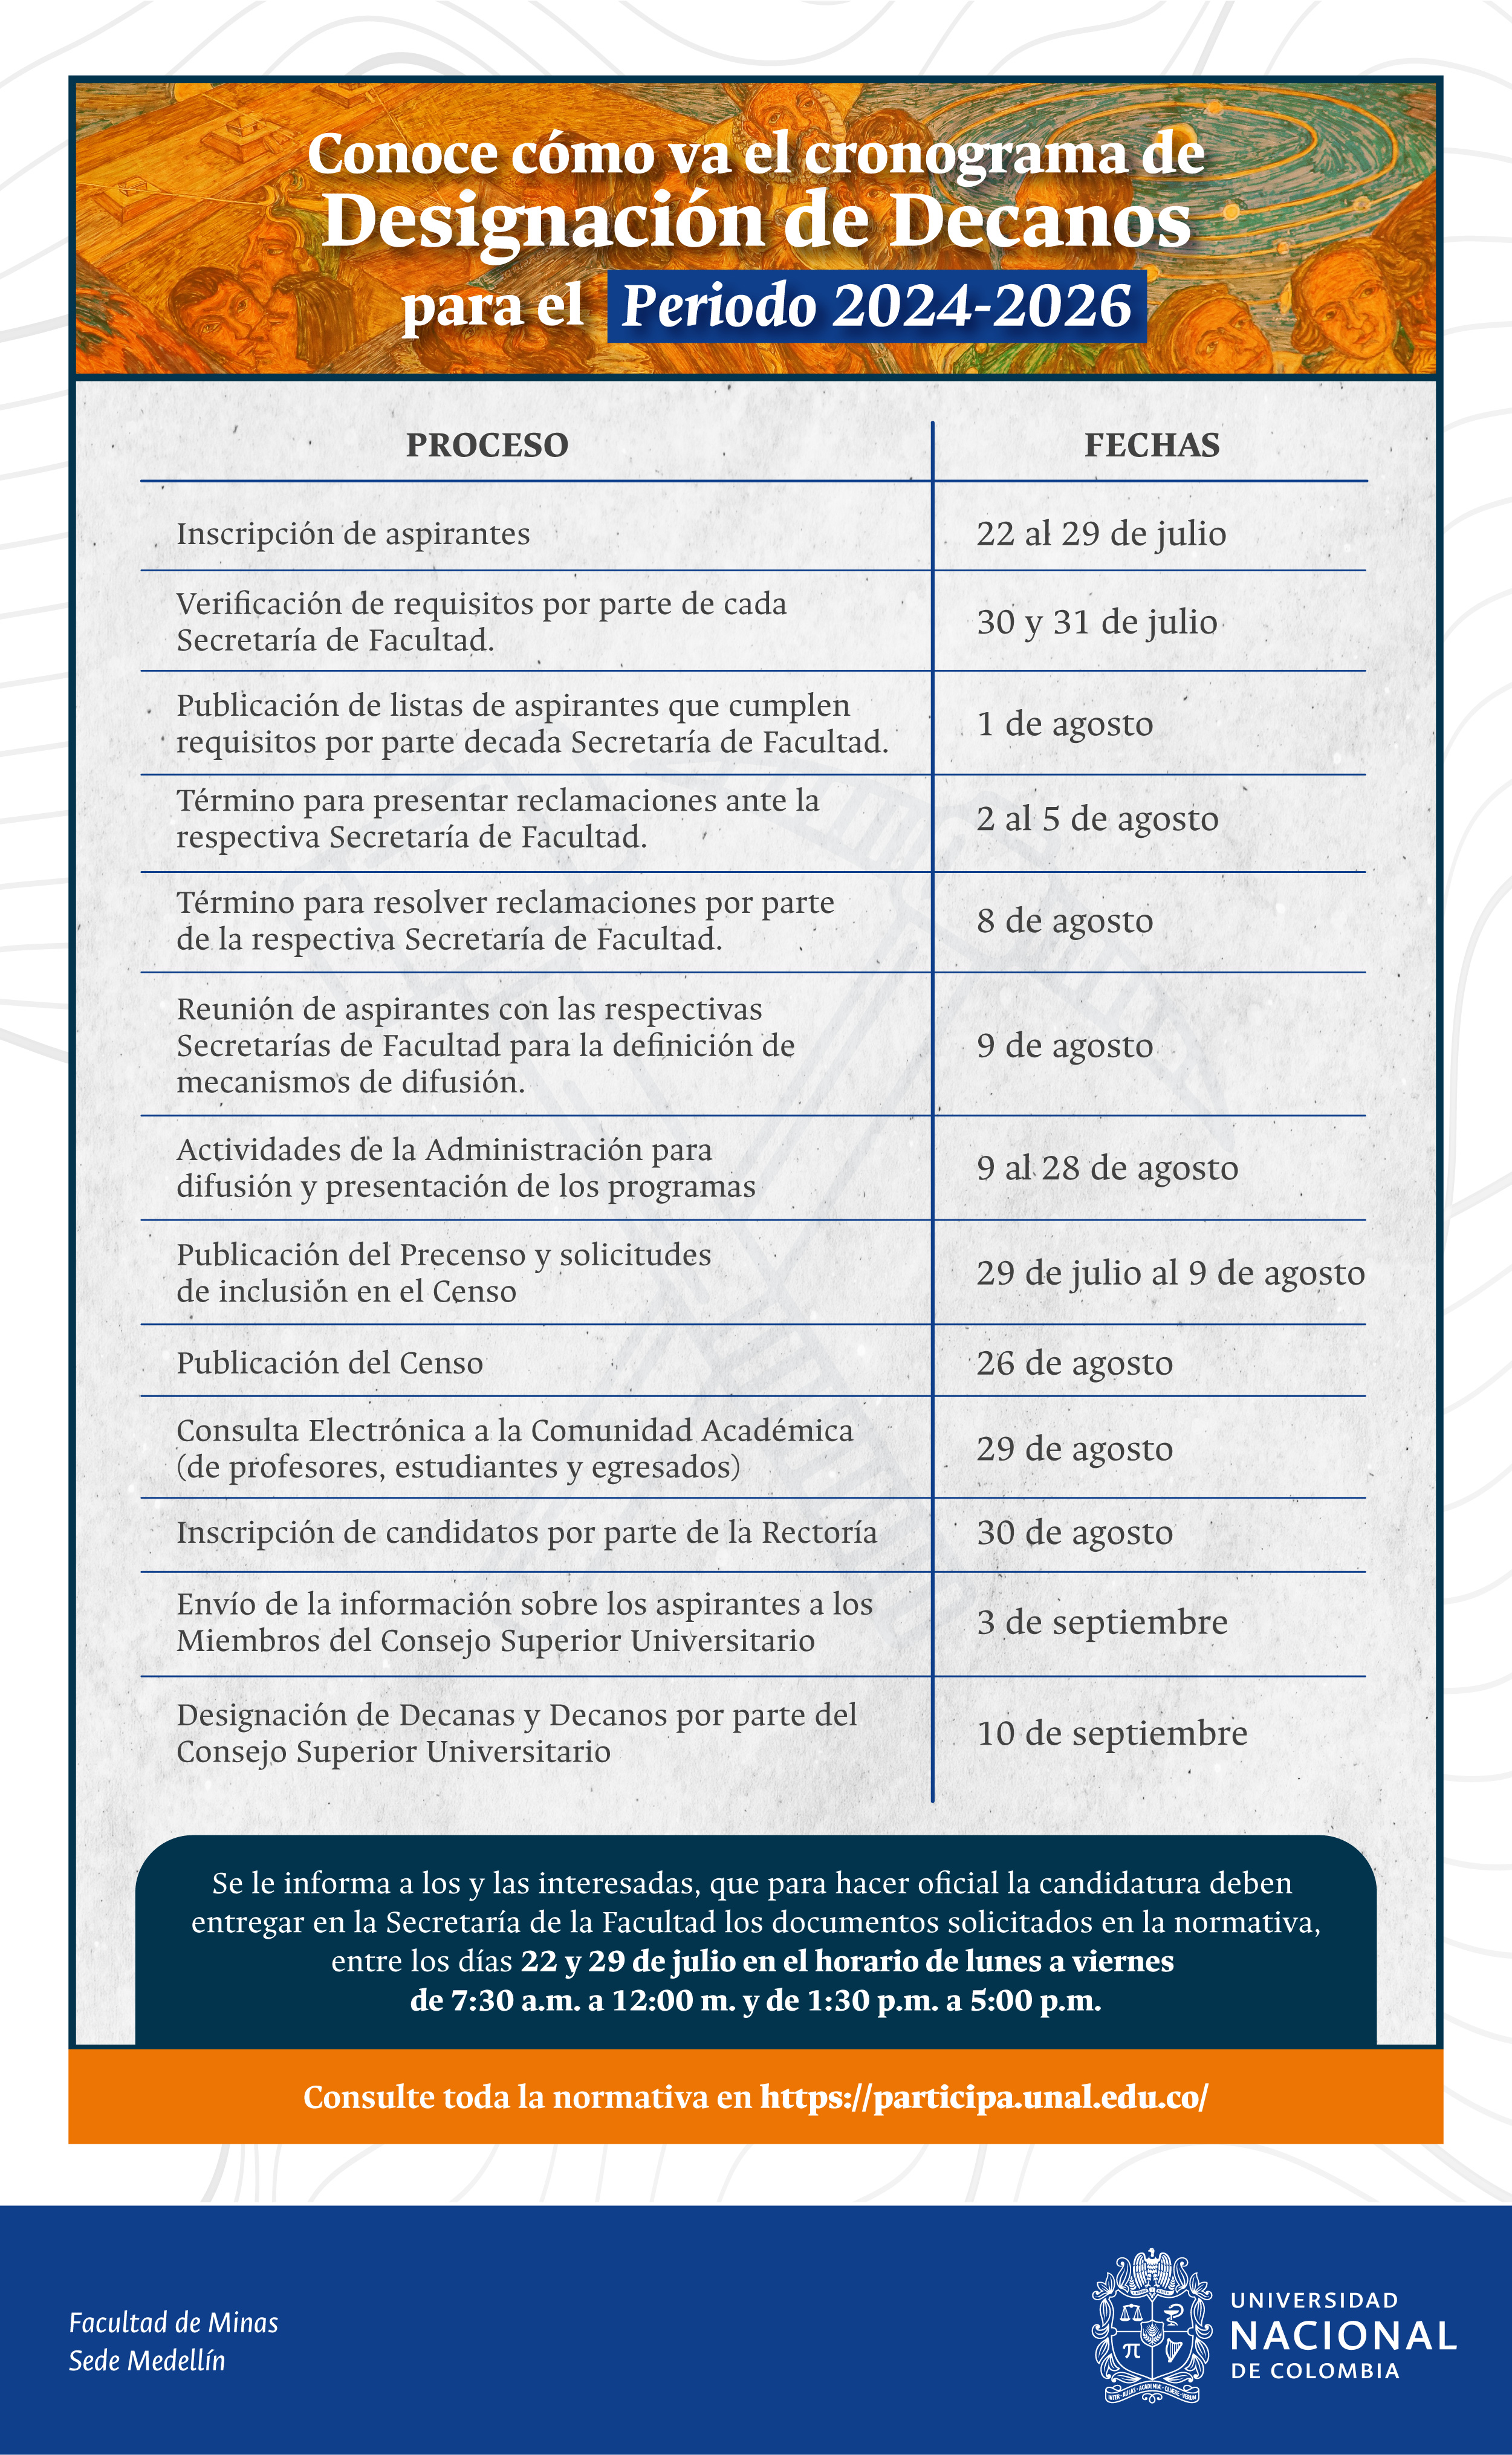 Cronograma del proceso de designación de Decanos de la Facultad de Minas de la Universidad Nacional de Colombia para el periodo 2022-2024